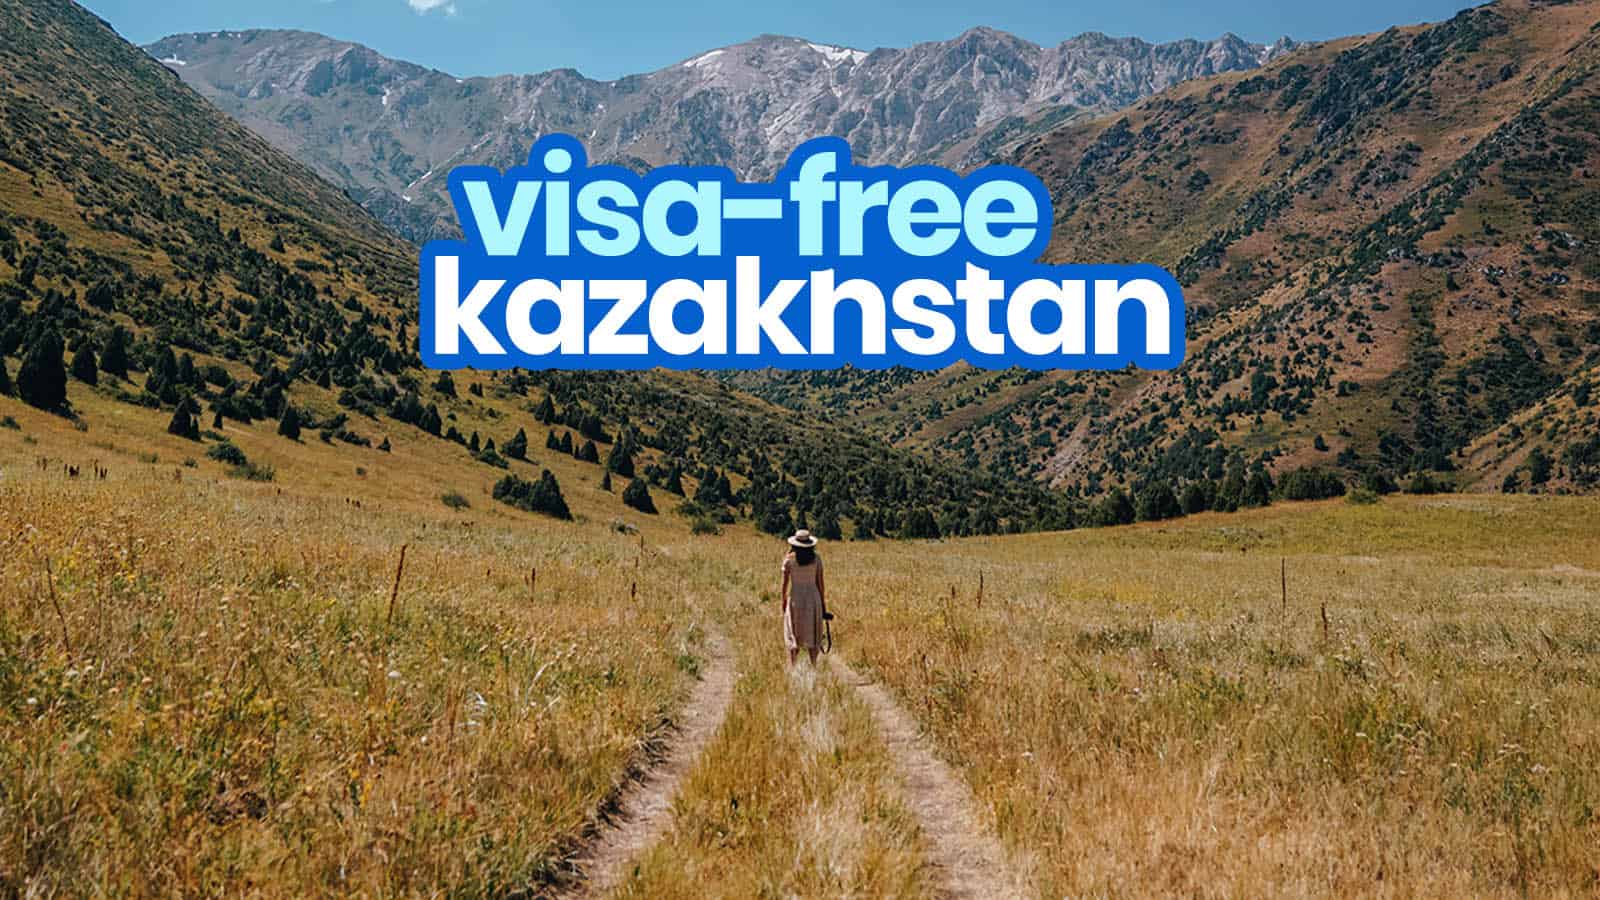 VISA-FREE KAZAKHSTAN: 12 Places to Visit & Things to Do